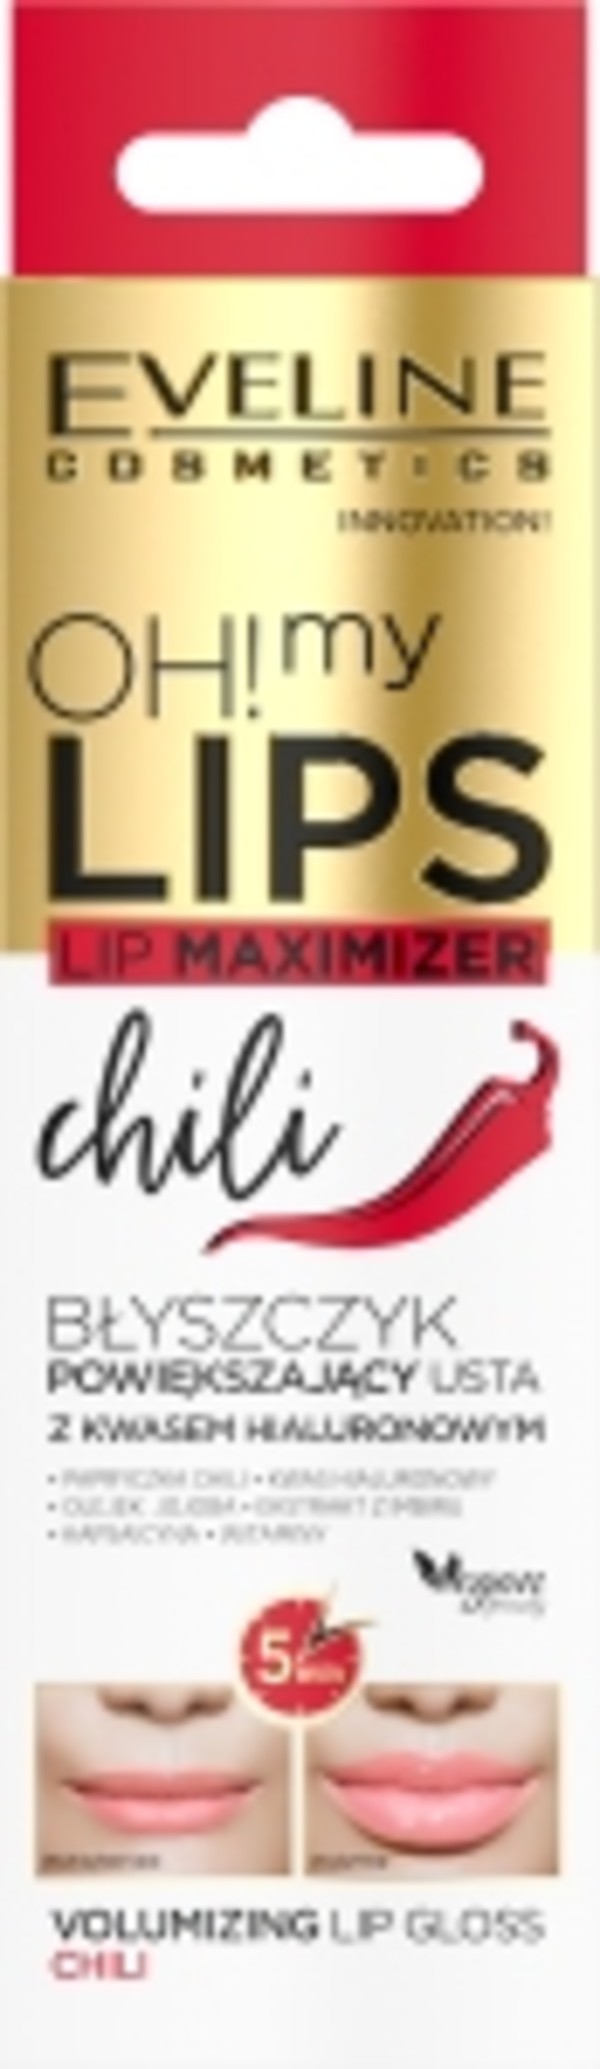 Oh My Lips Maximizer Chili Błyszczyk Do Ust